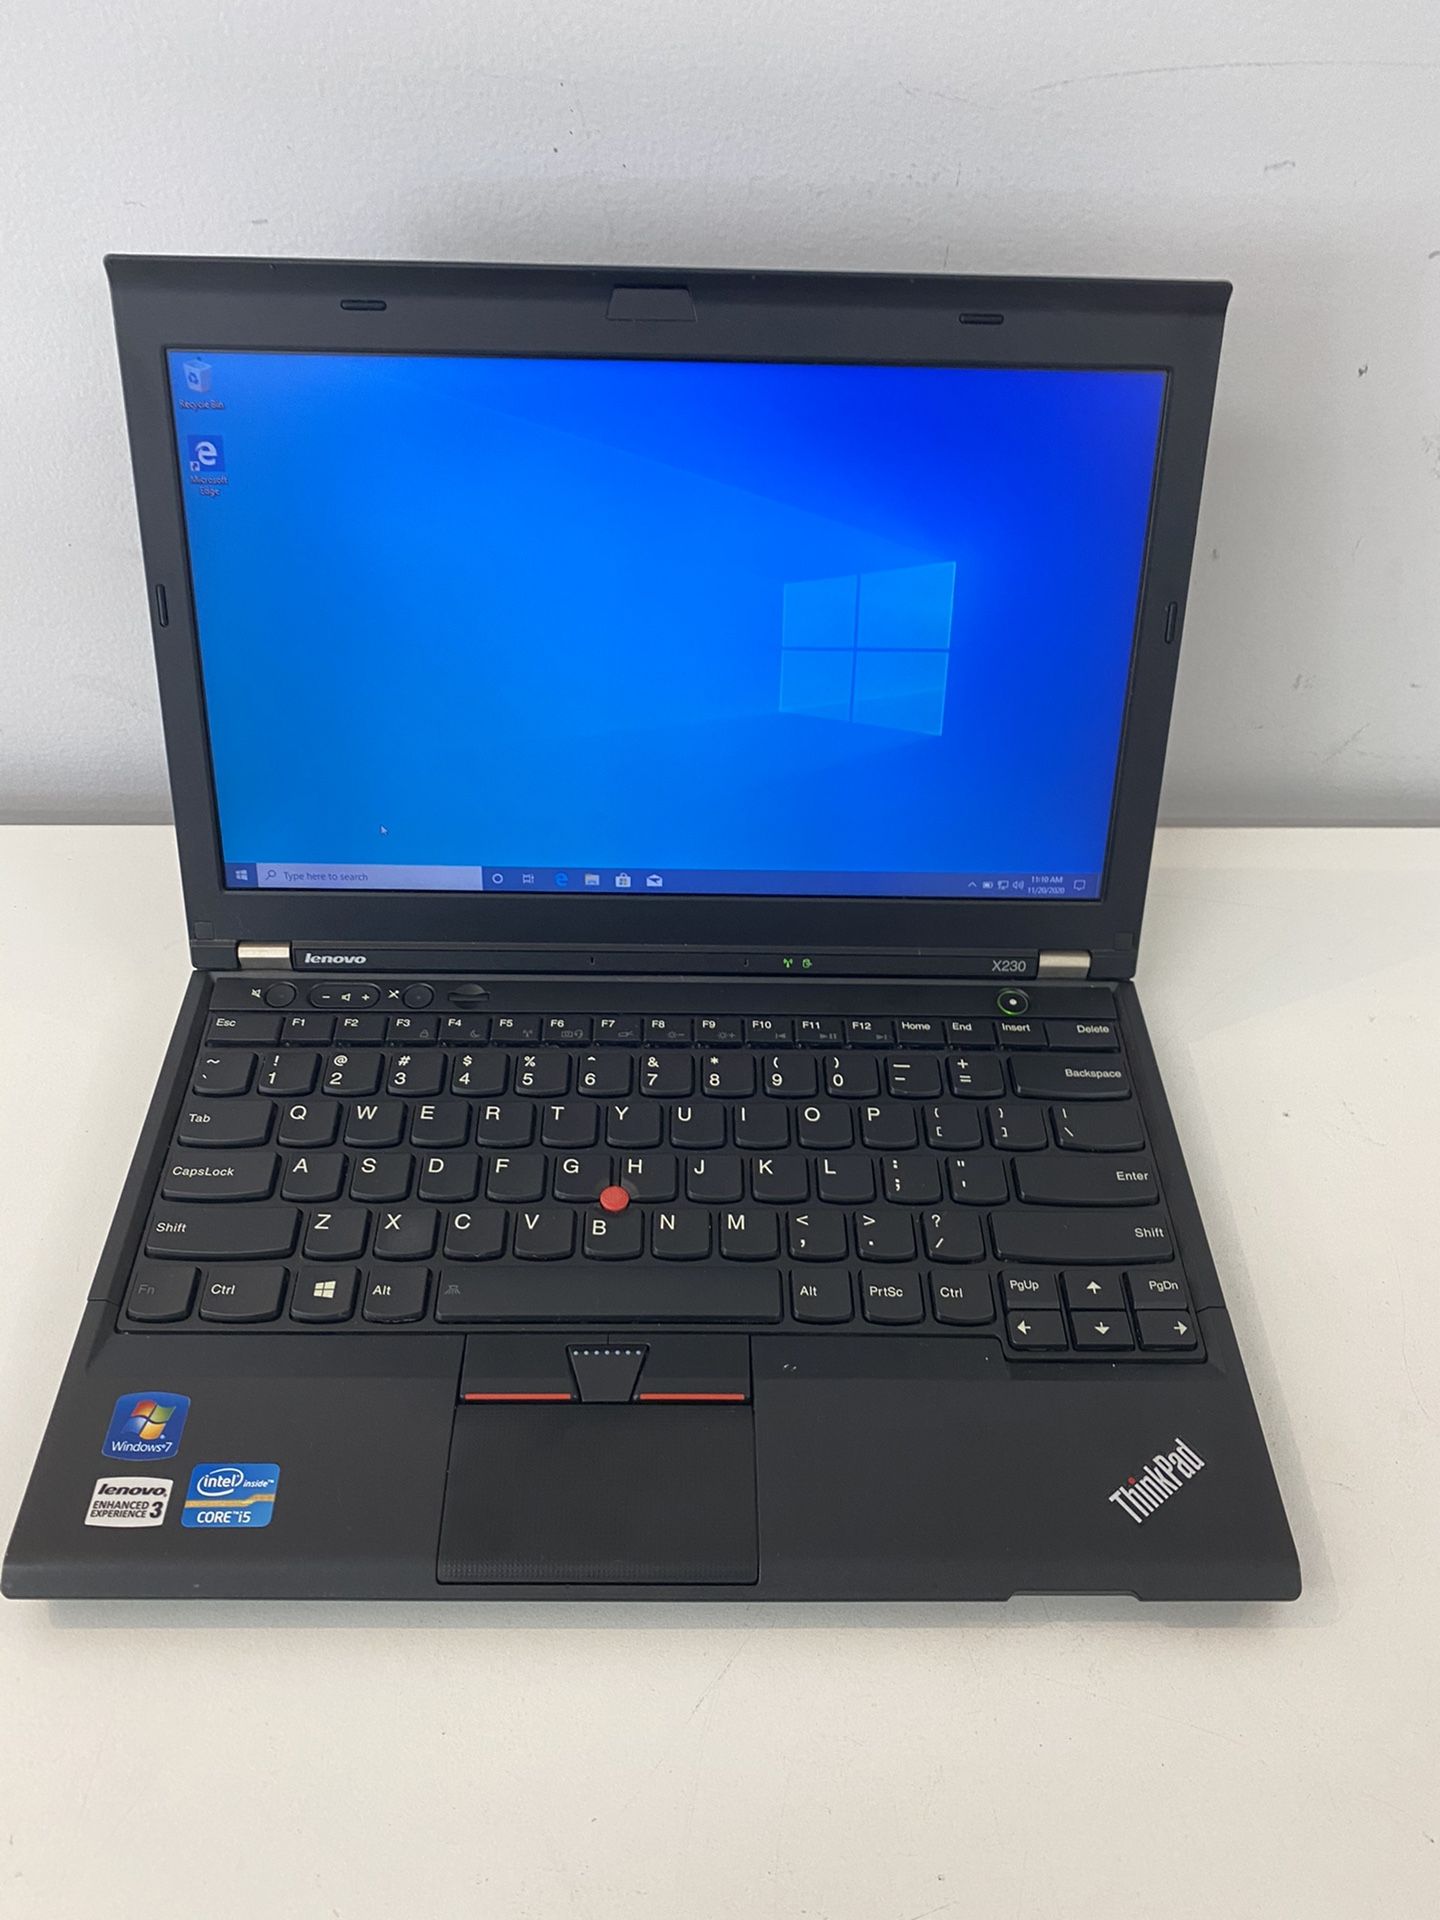 Lenovo ThinkPad i5 laptop